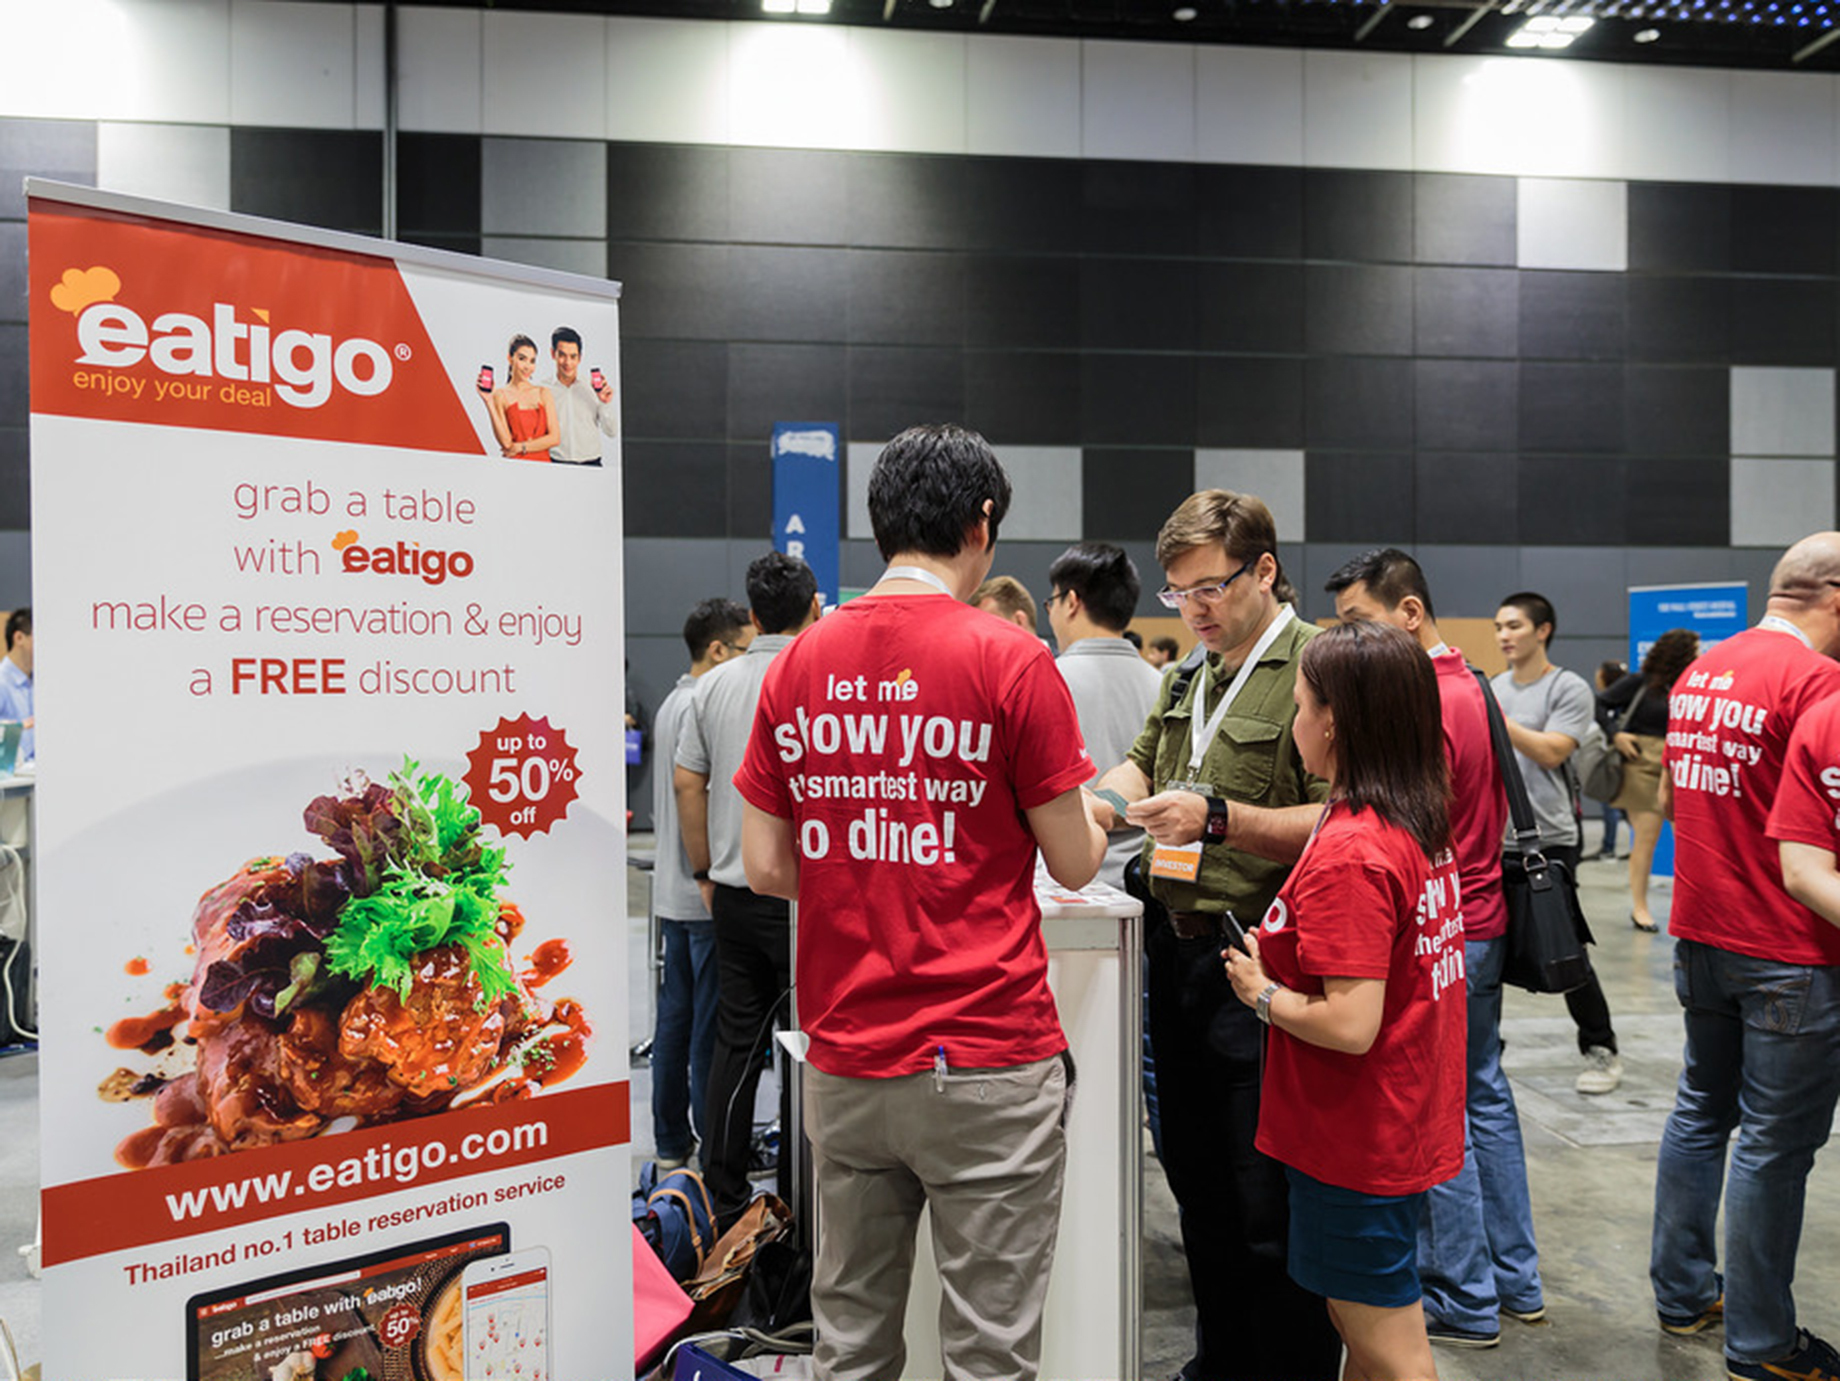 降低空桌率，最高打 5 折！餐廳預約平台Eatigo在泰國、新加坡的崛起之路